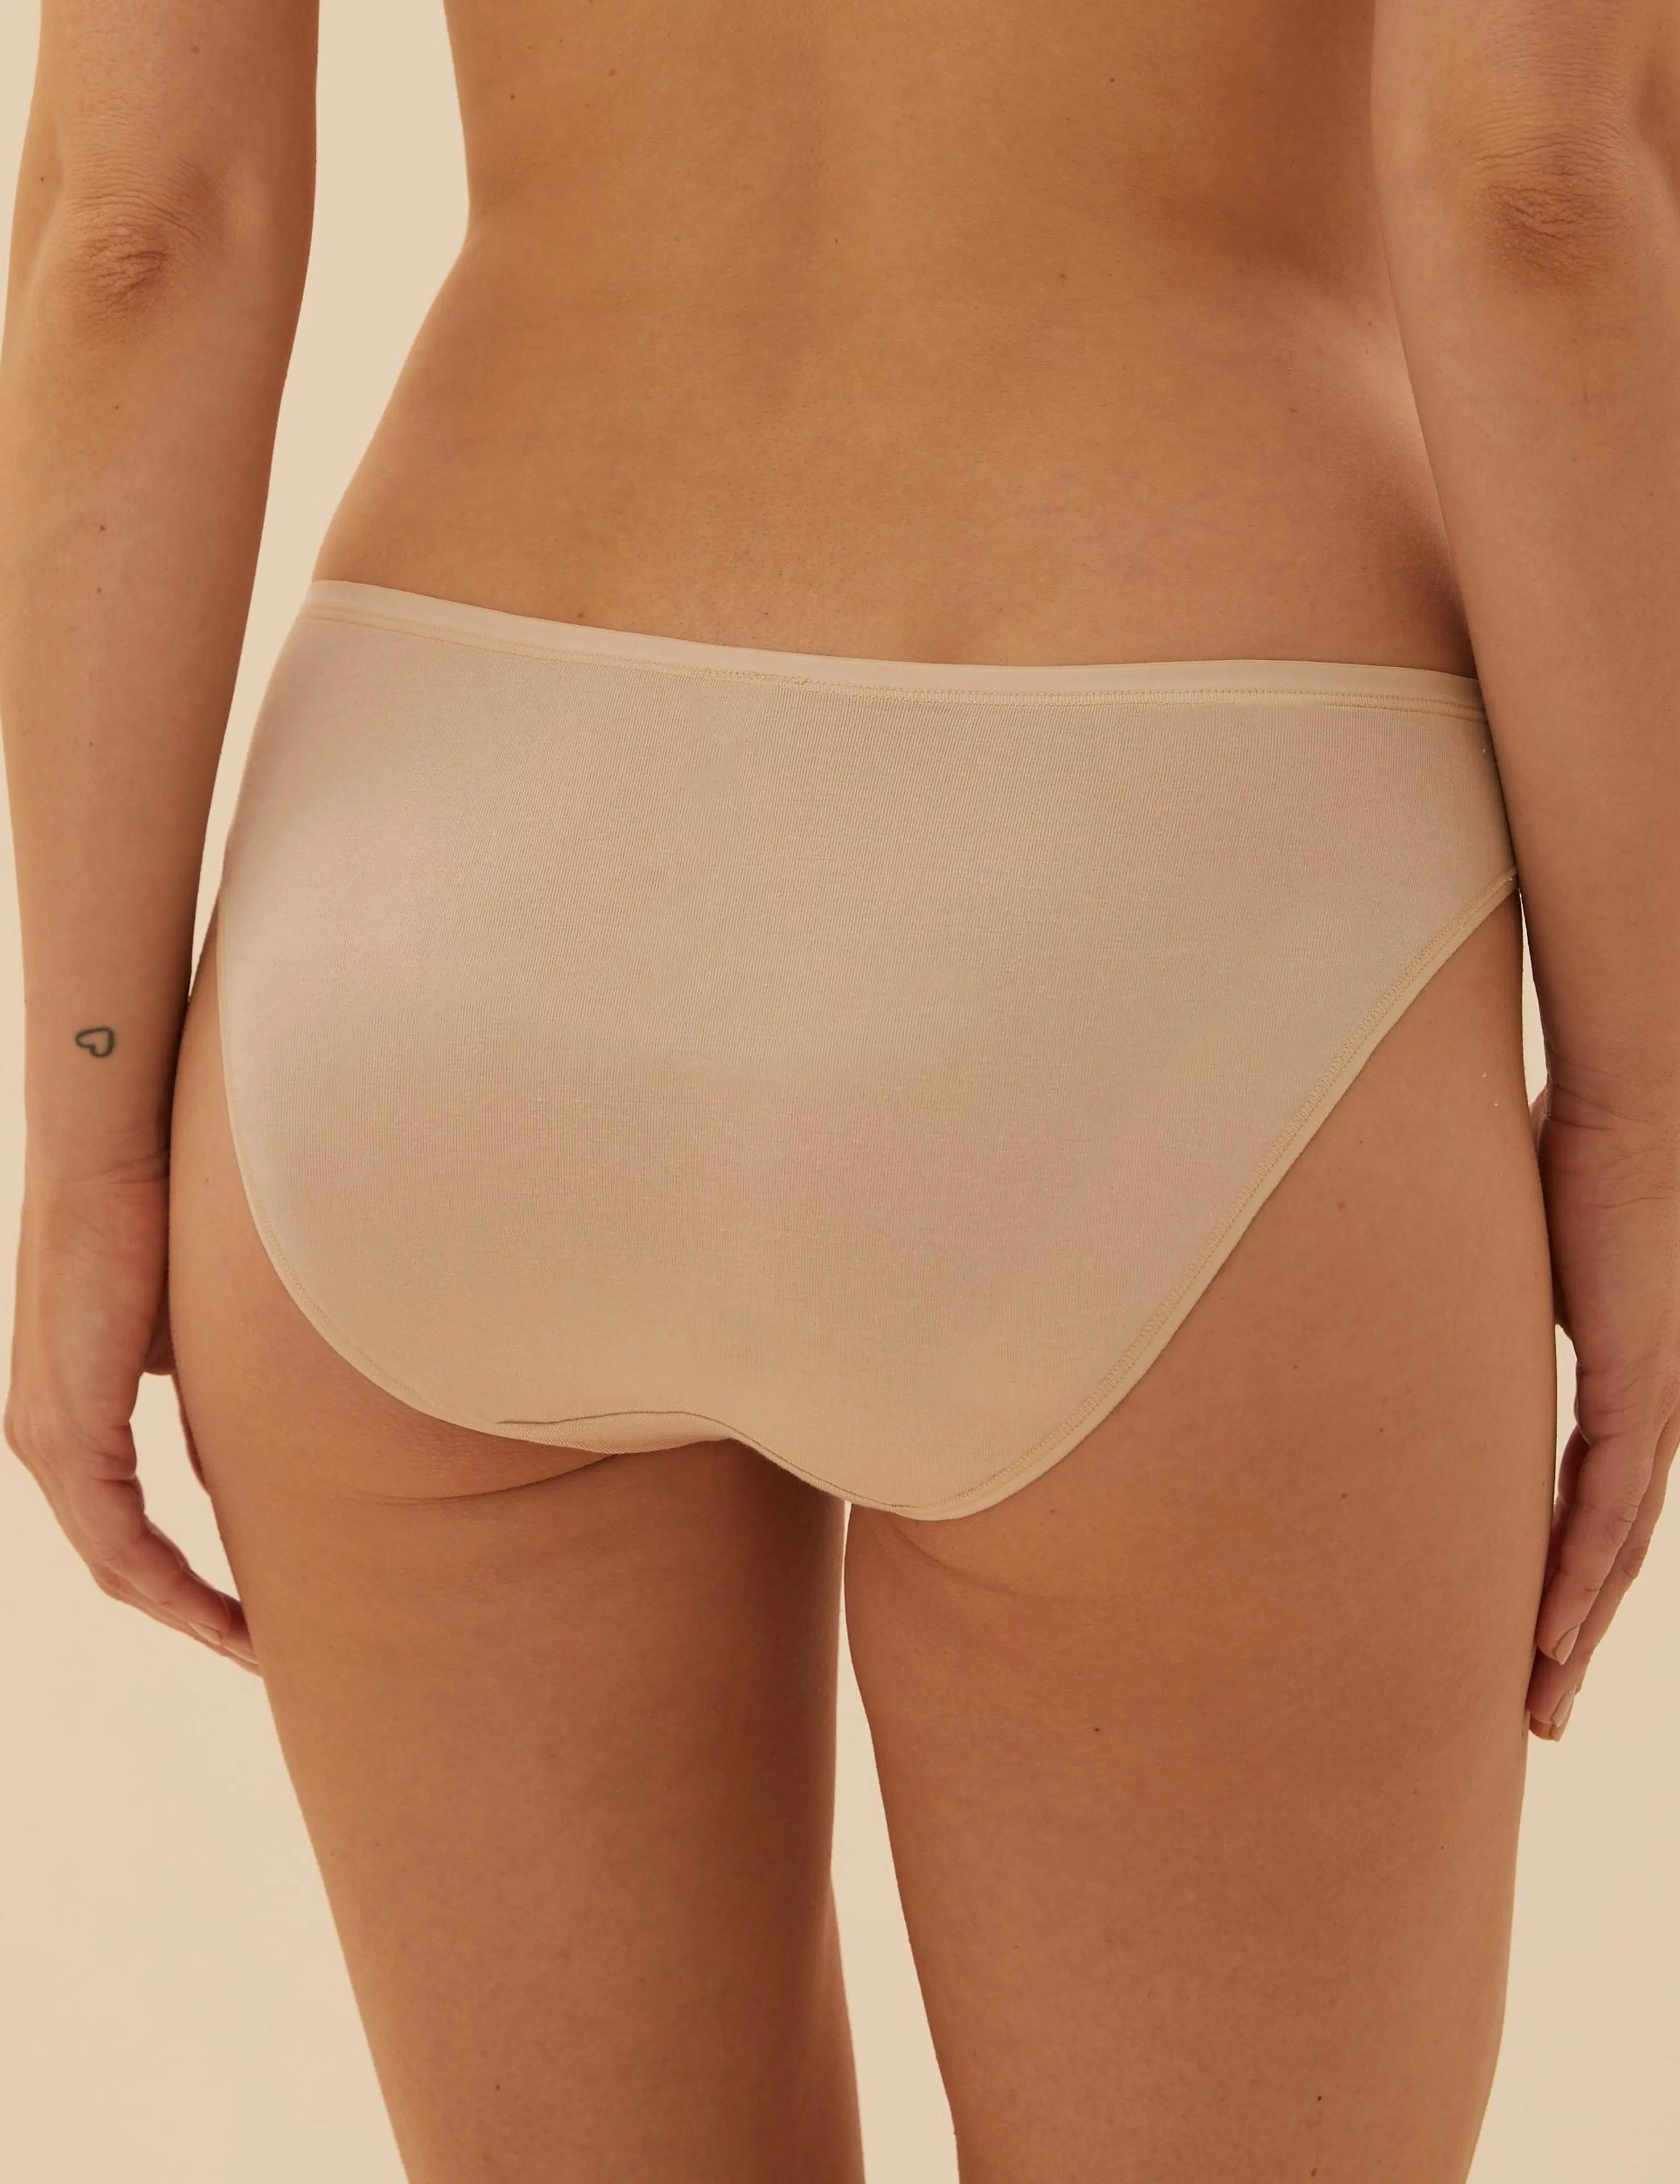 M&S alushousupakkaus 5 kpl Bikini modaalisekoite